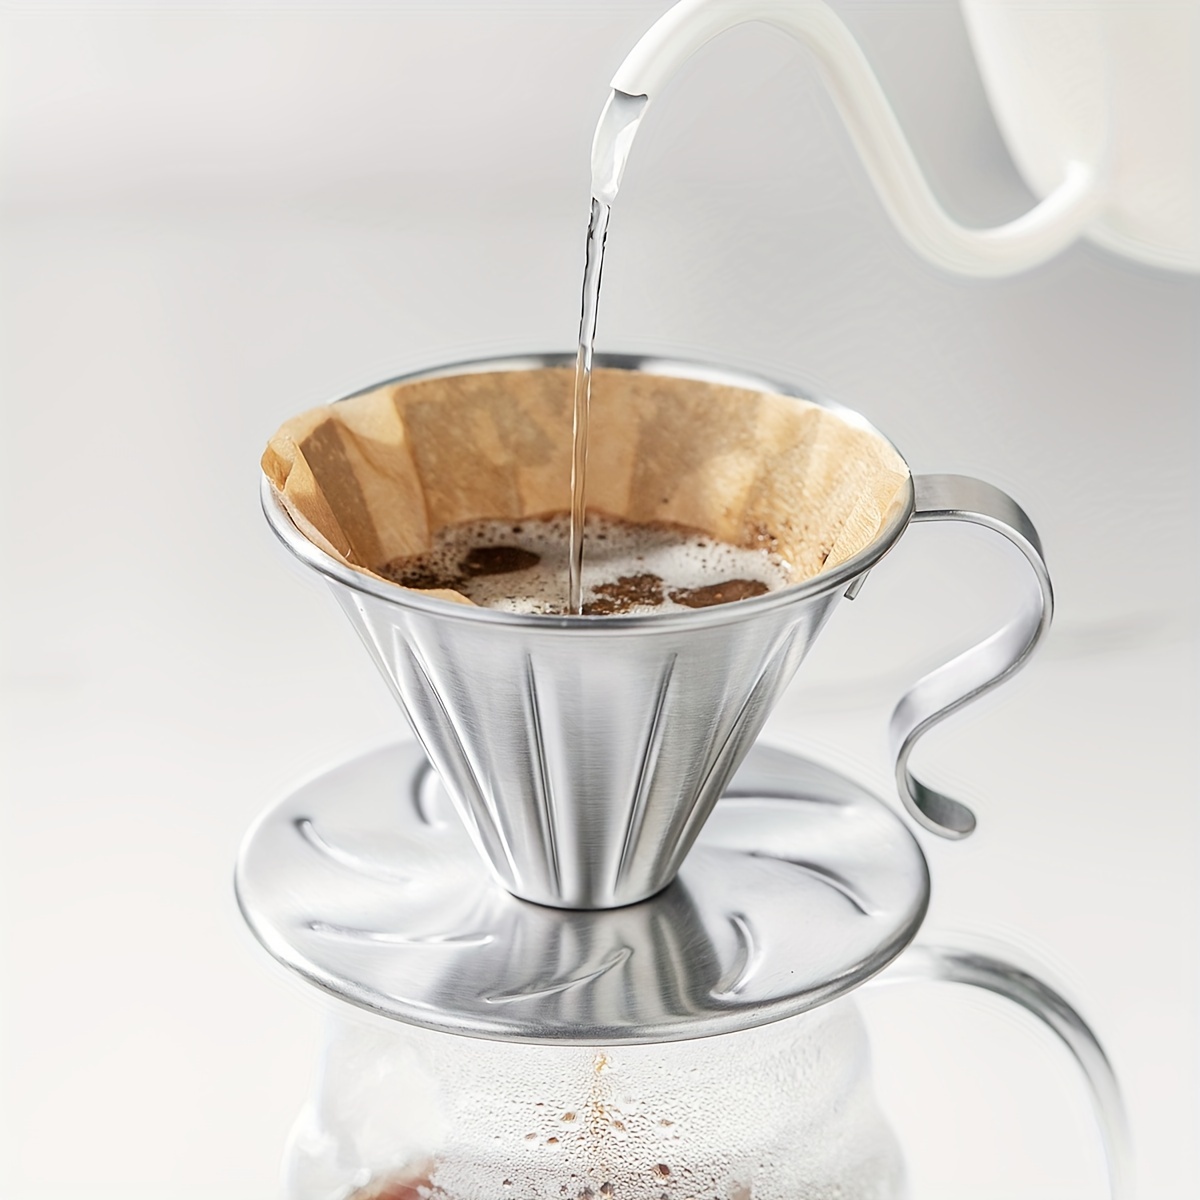 Filtro cafetera acero inoxidable - Filtro cafe presurizado de